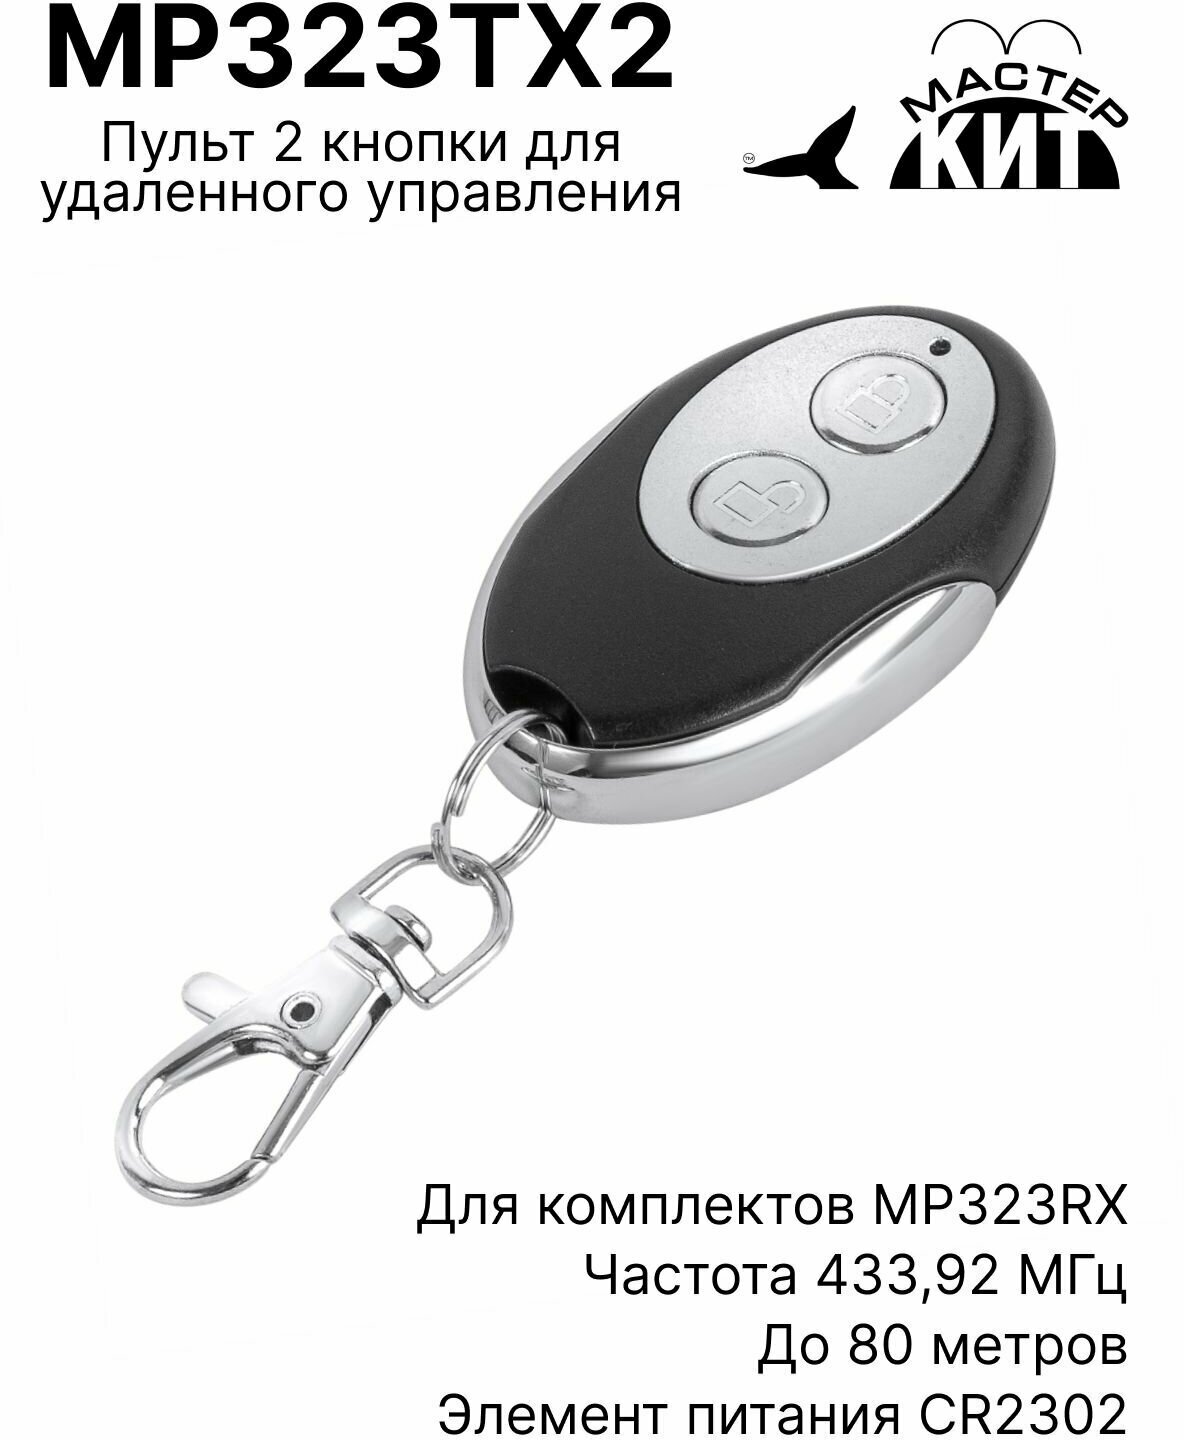 Пульт 2 кнопки для удаленного управления приемниками серии MP323RX до 80 метров, MP323TX2 Мастер Кит